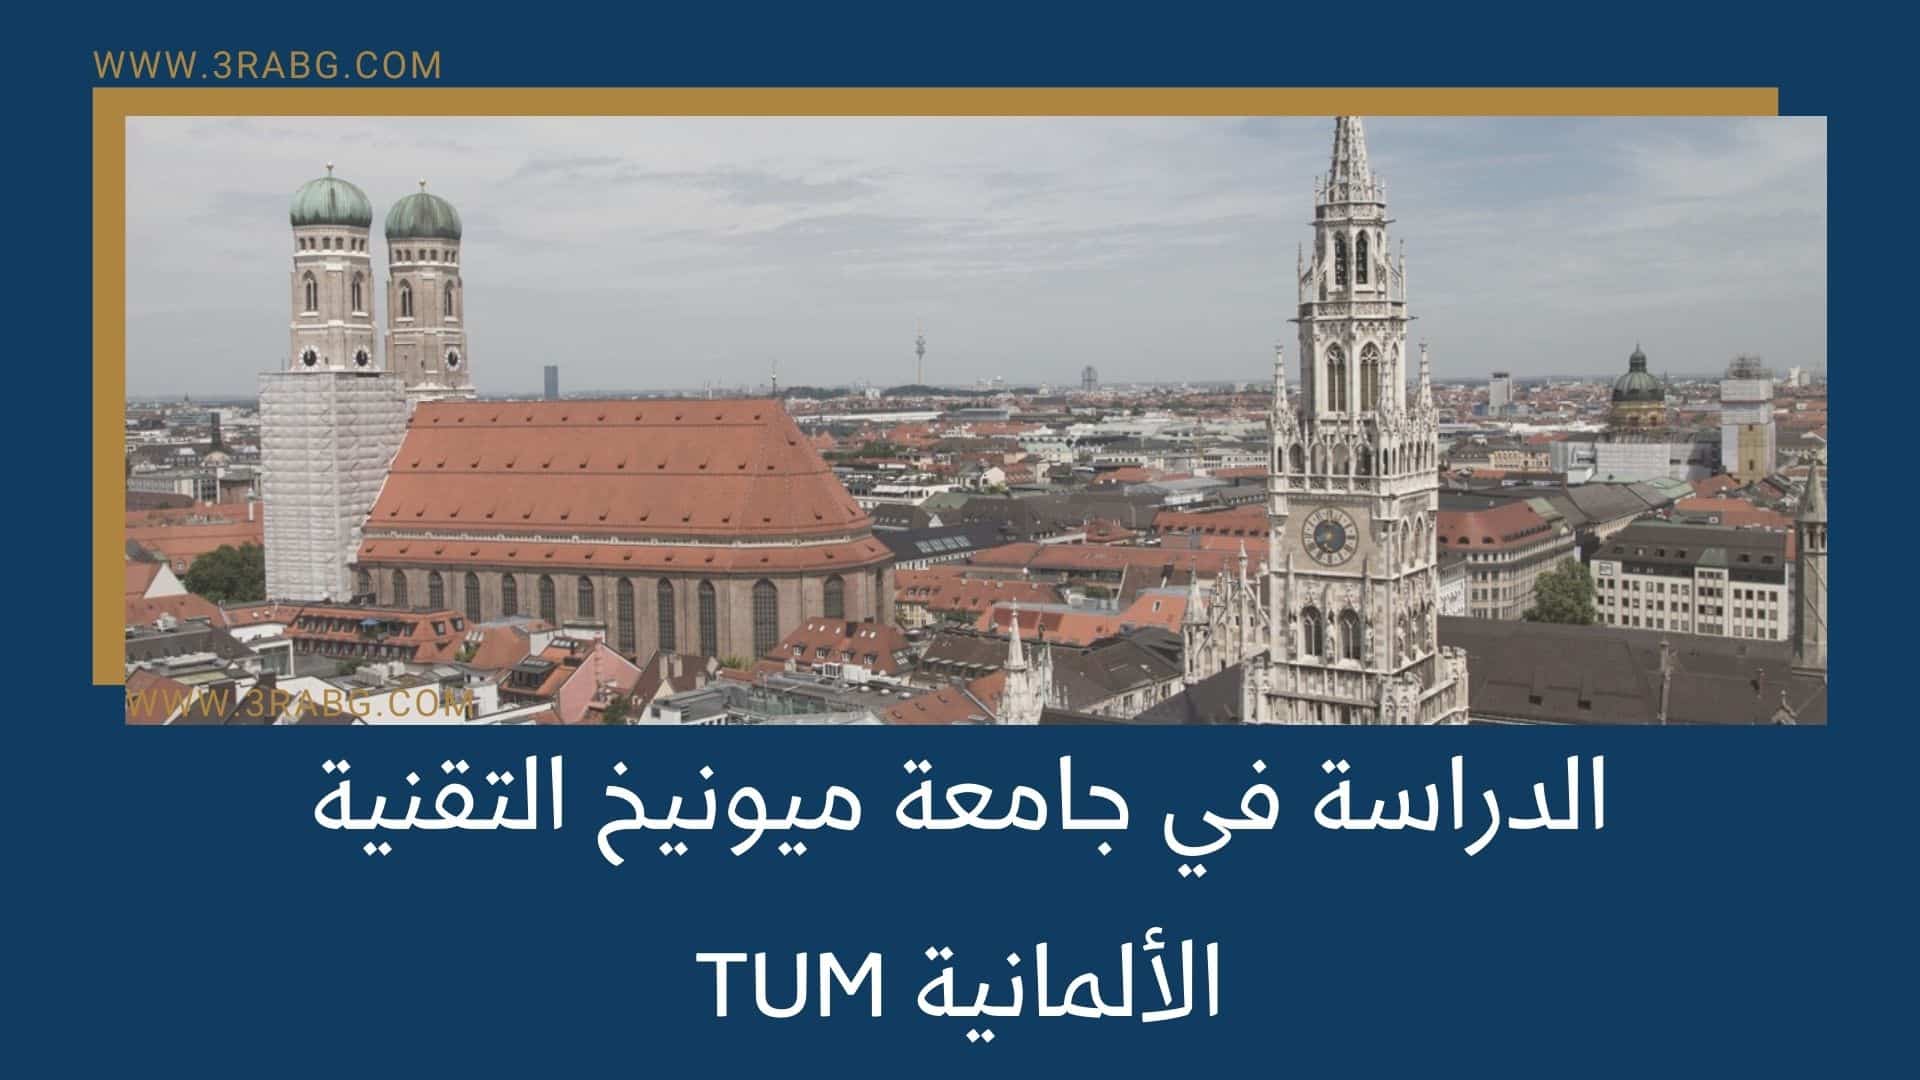 الدراسة في جامعة ميونيخ التقنية TUM الألمانية